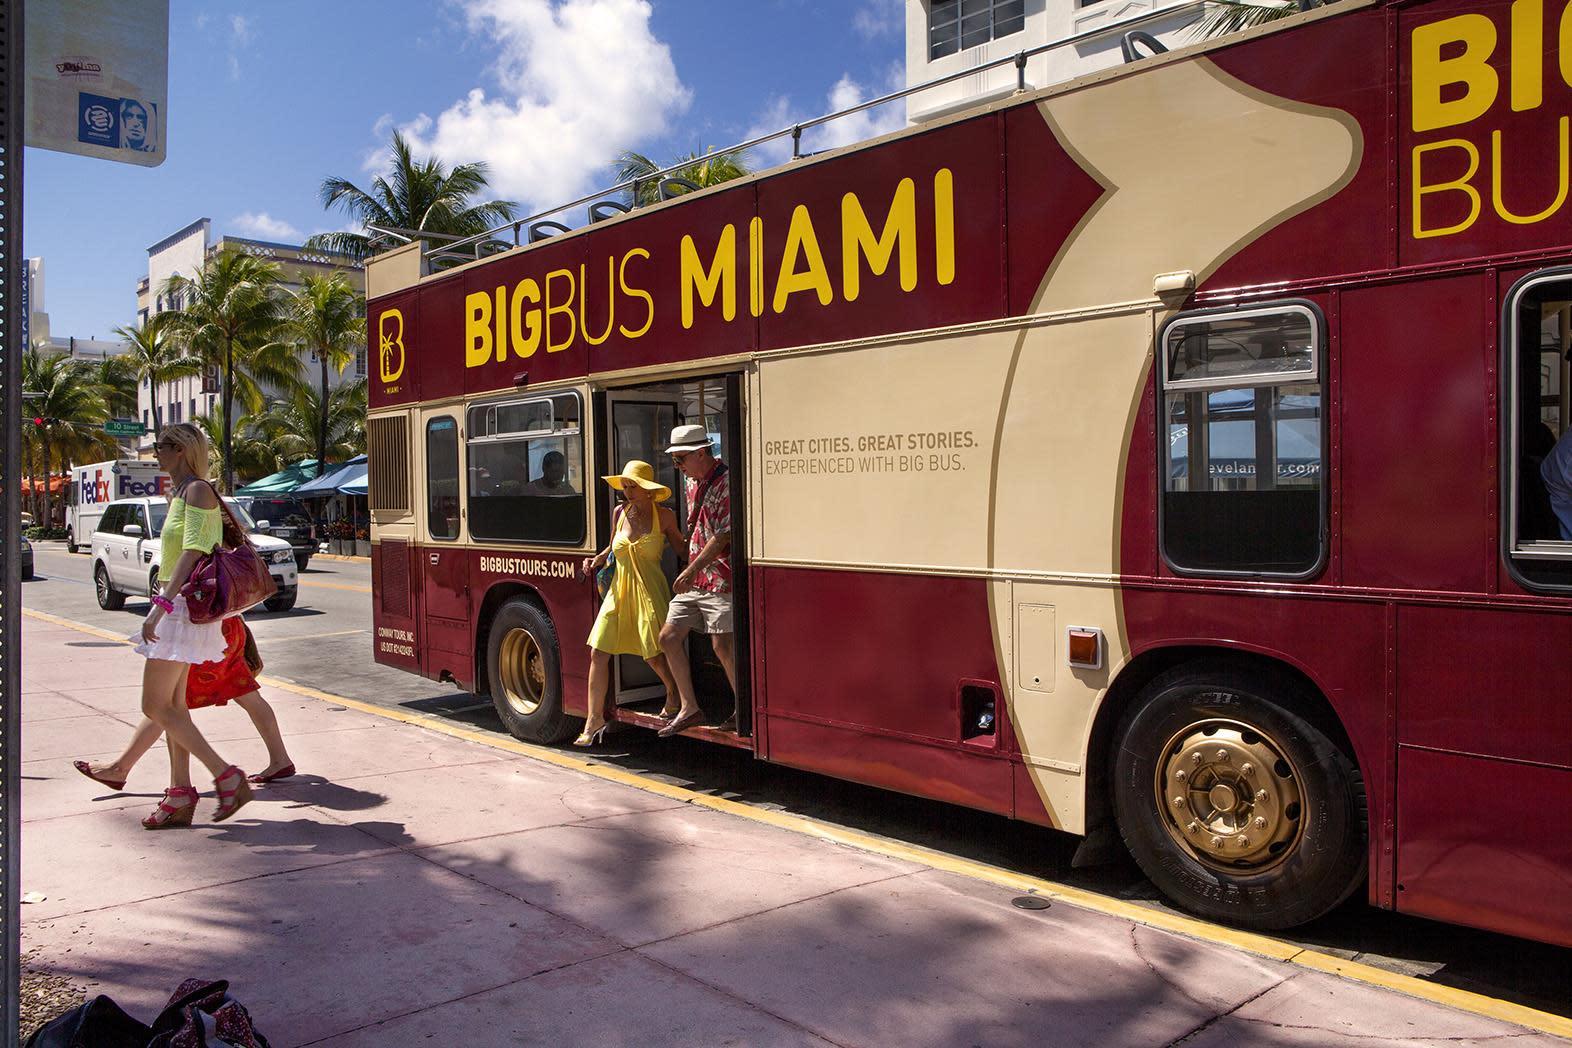 big bus tours miami fl